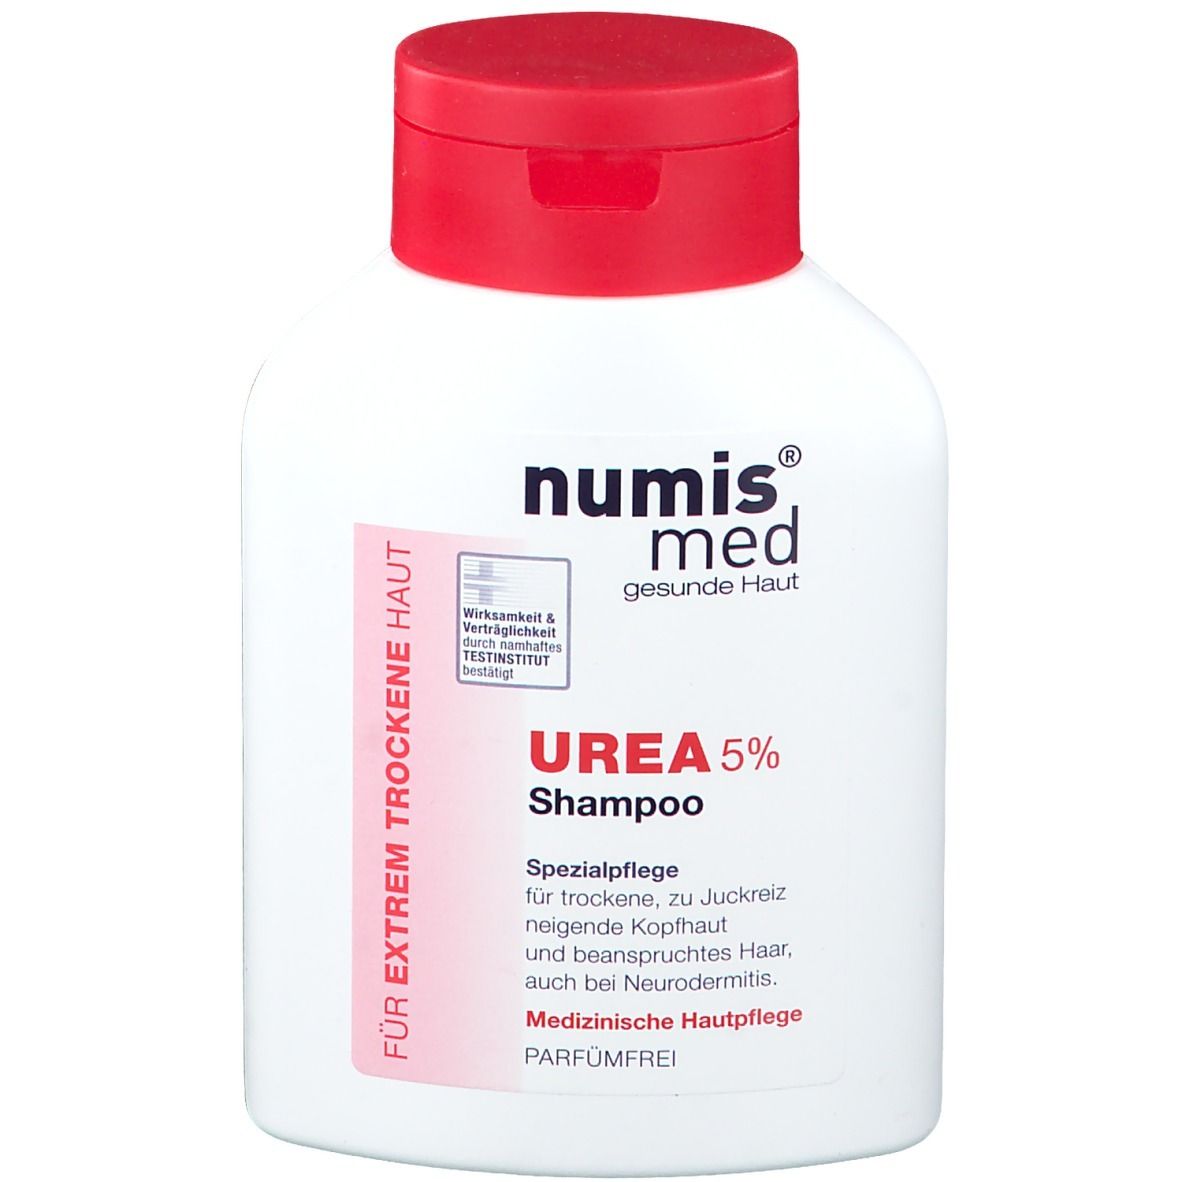 numis® med UREA 5% Shampoo